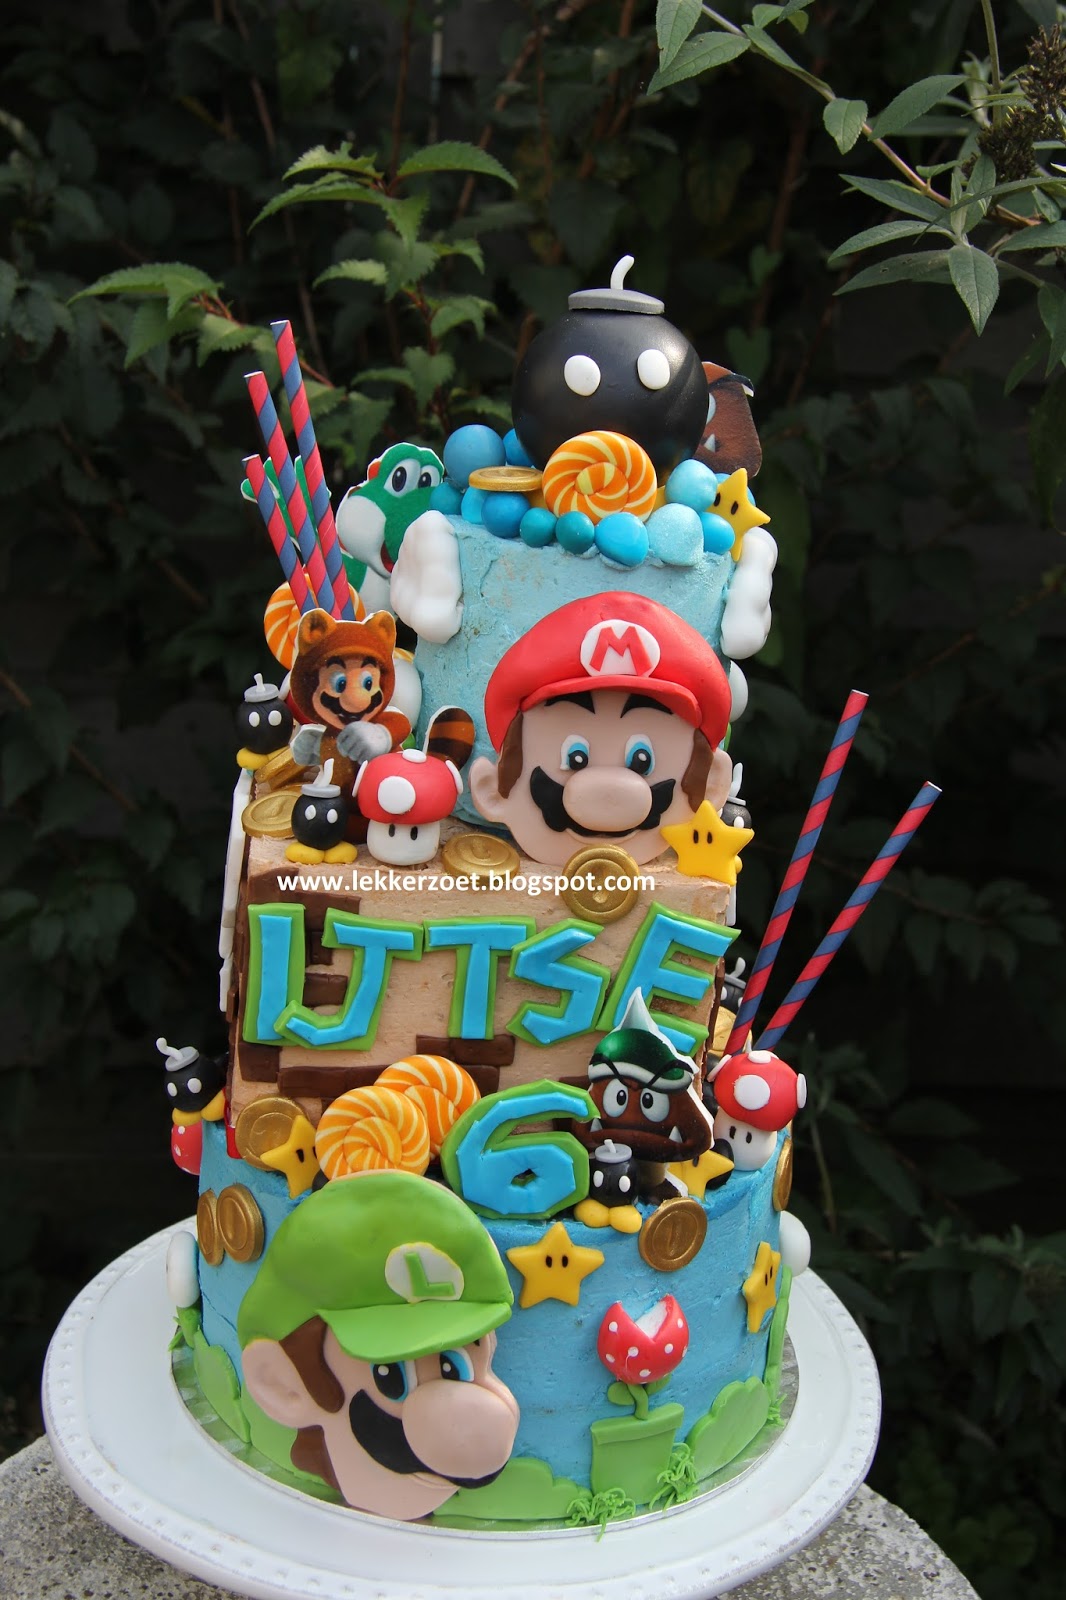 Fonkelnieuw lekker zoet: Mario Bross verjaardags taart Ijtse 6 jaar SN-89